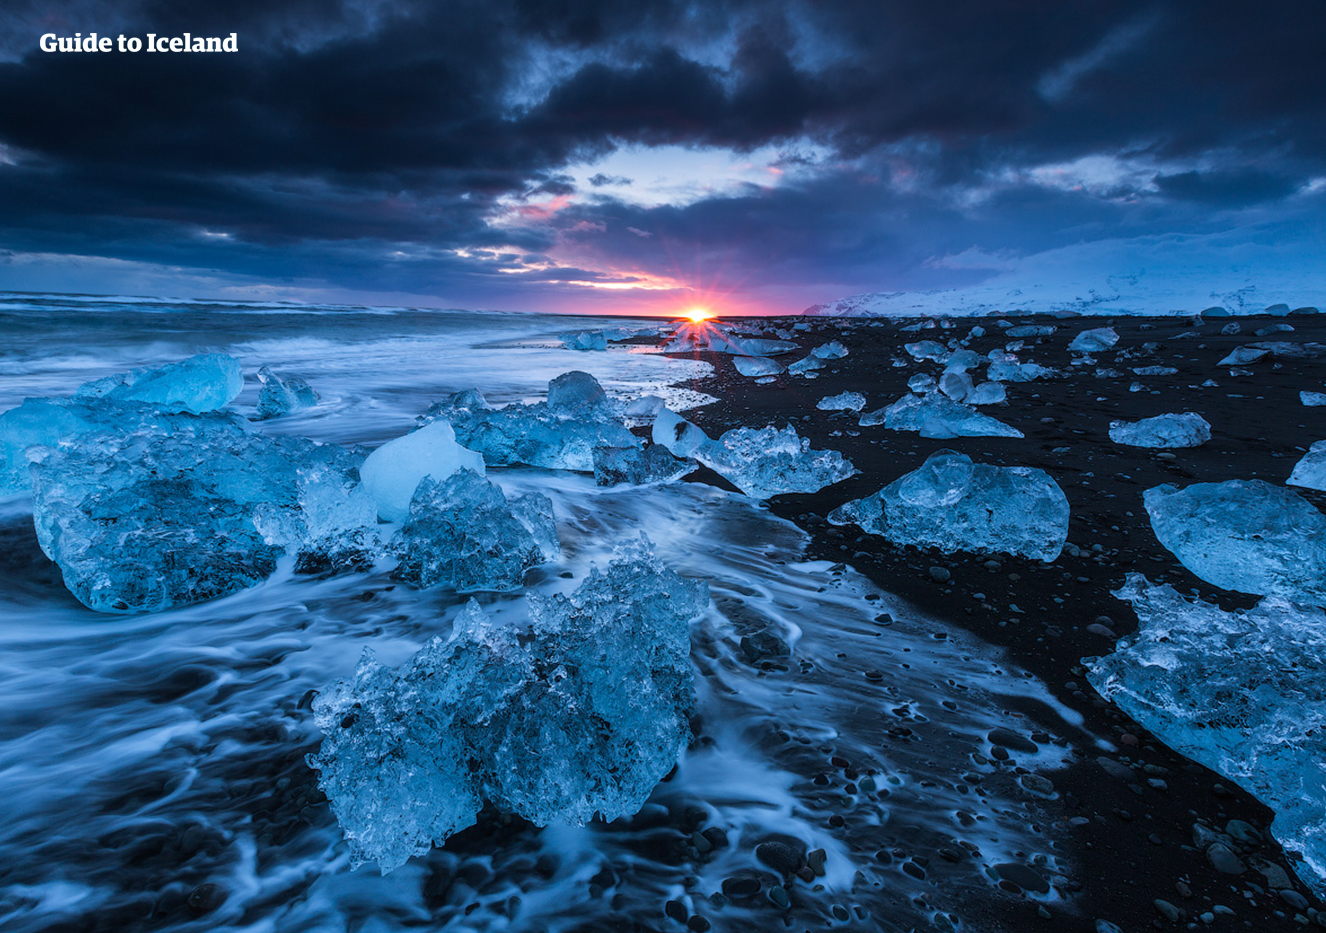 Auf einer Mietwagen-Winterreise kannst du den Diamantstrand am Abend besuchen und zuschauen, wie die Sonne zwischen den glitzernden Eisbergen untergeht.